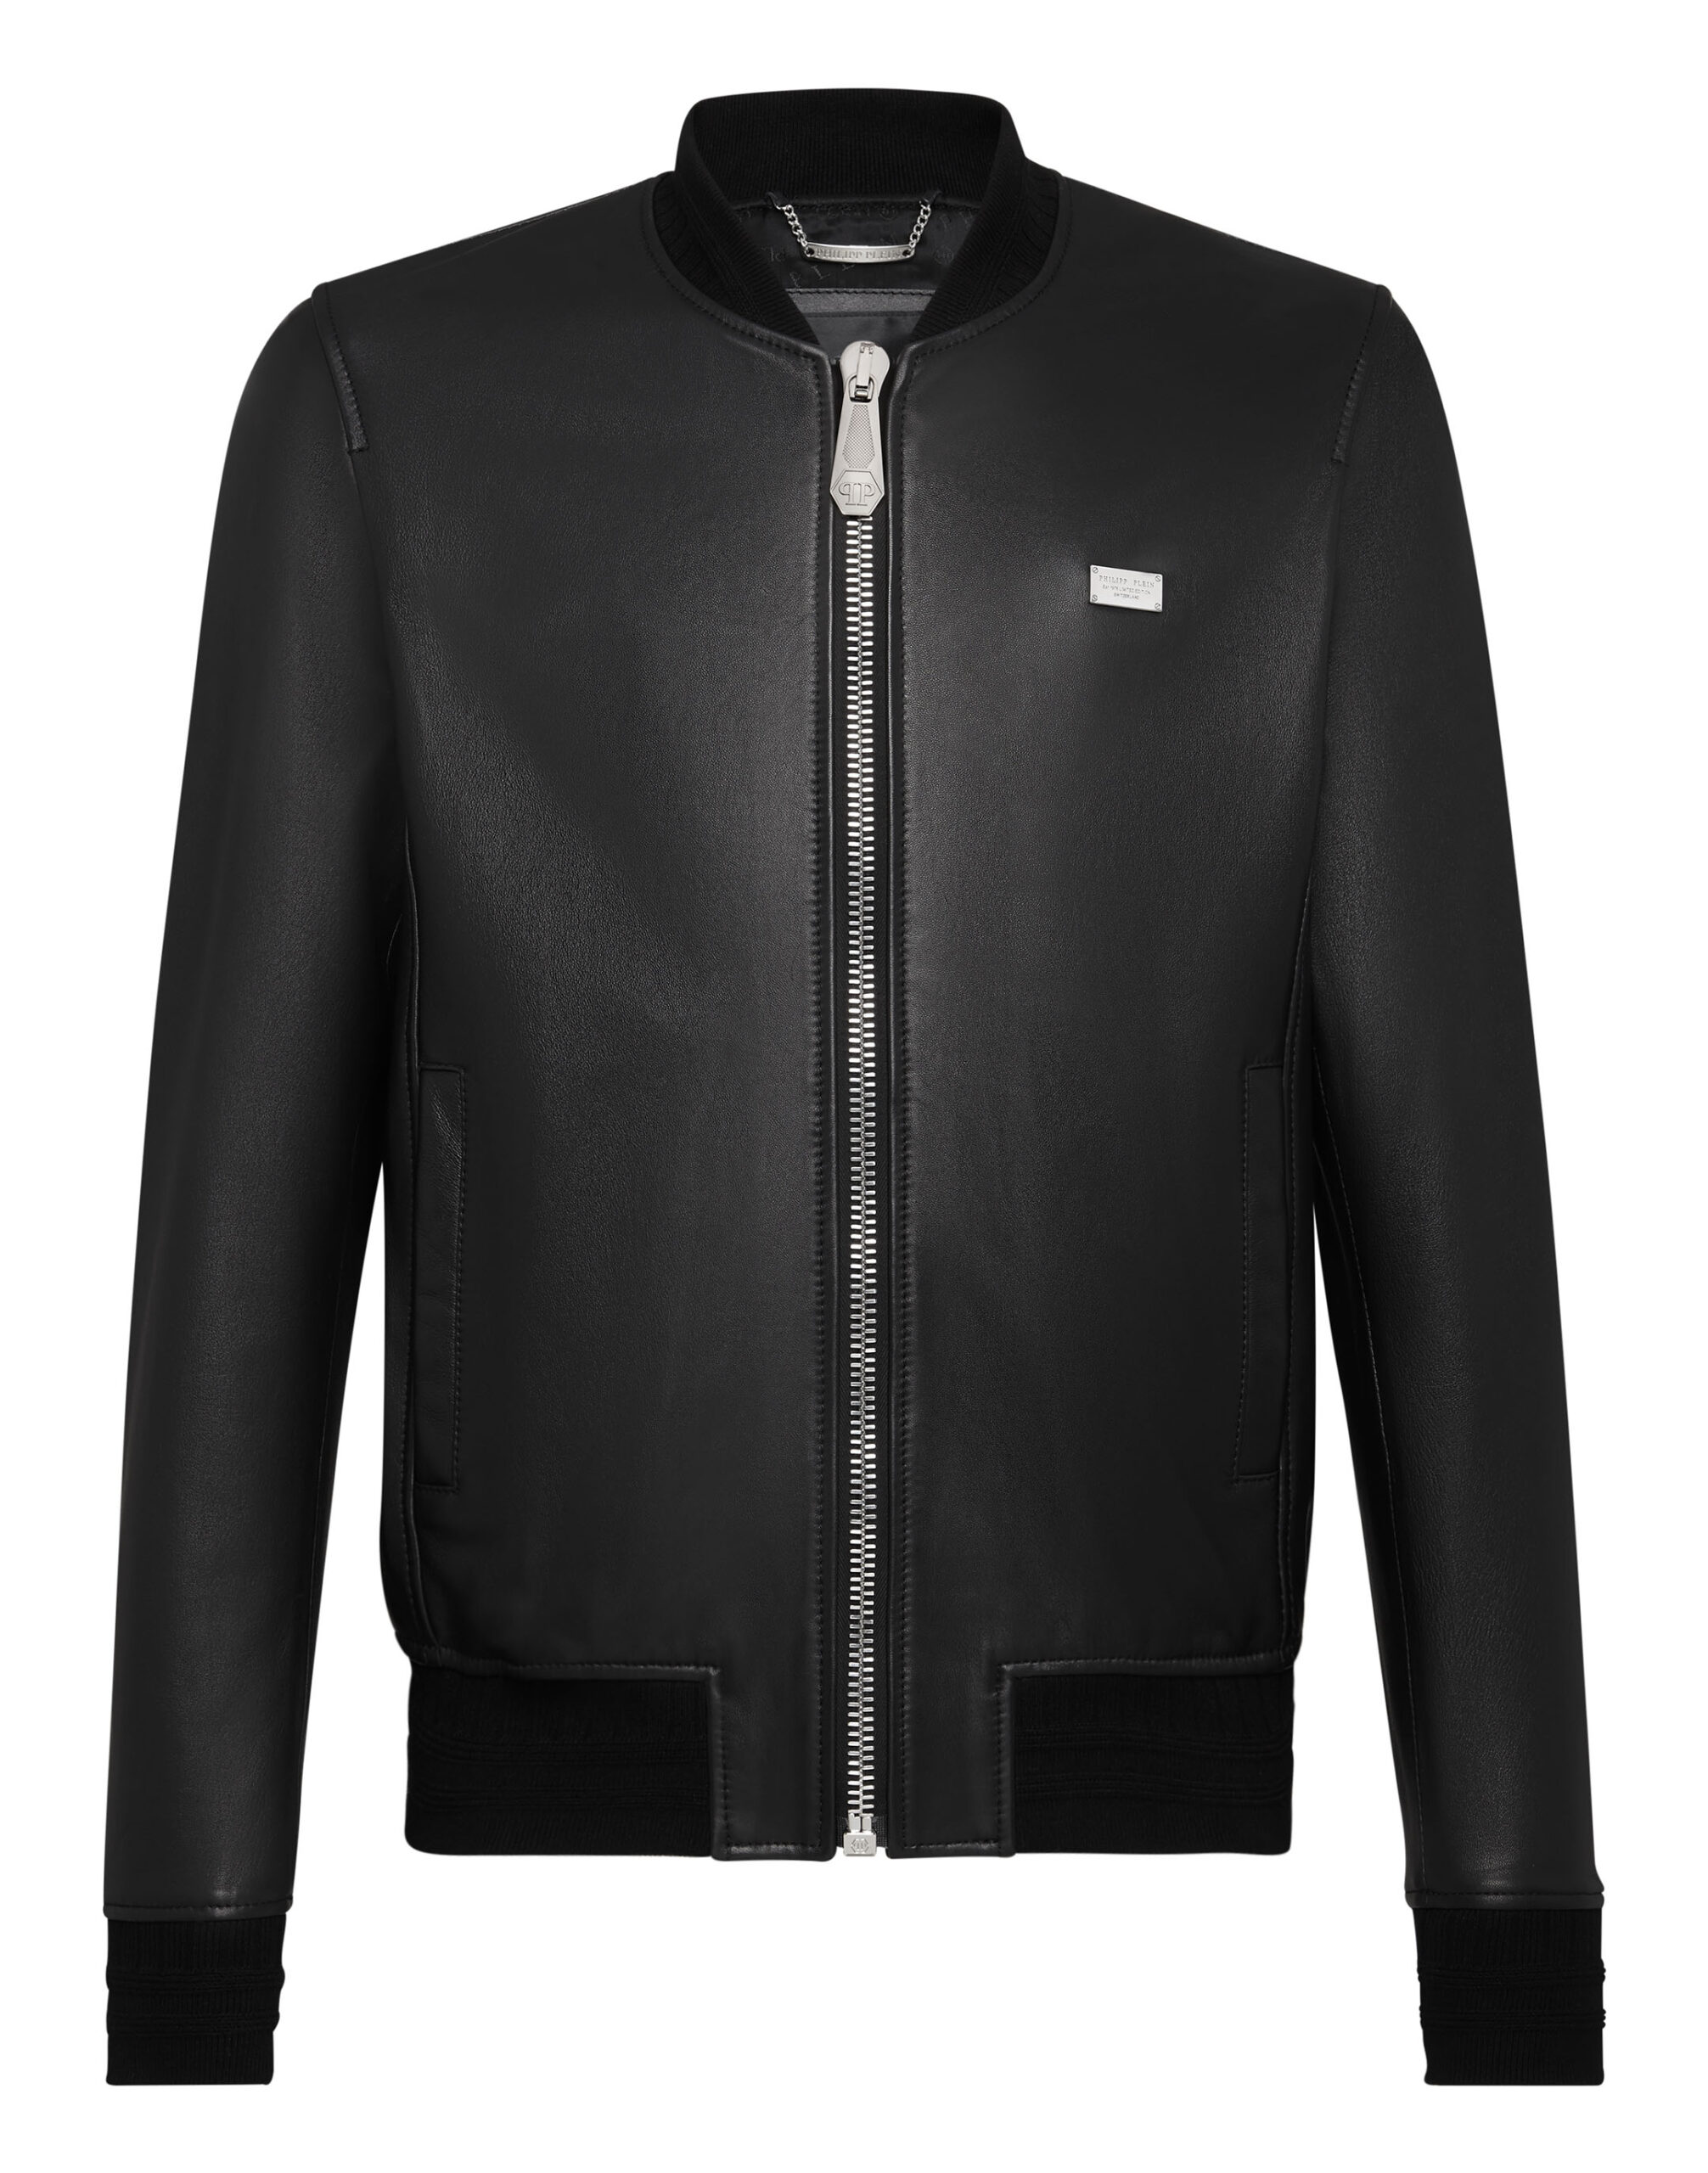 Philipp Plein Leather Jacket - Leather Guys: Luxury Leather Jackets